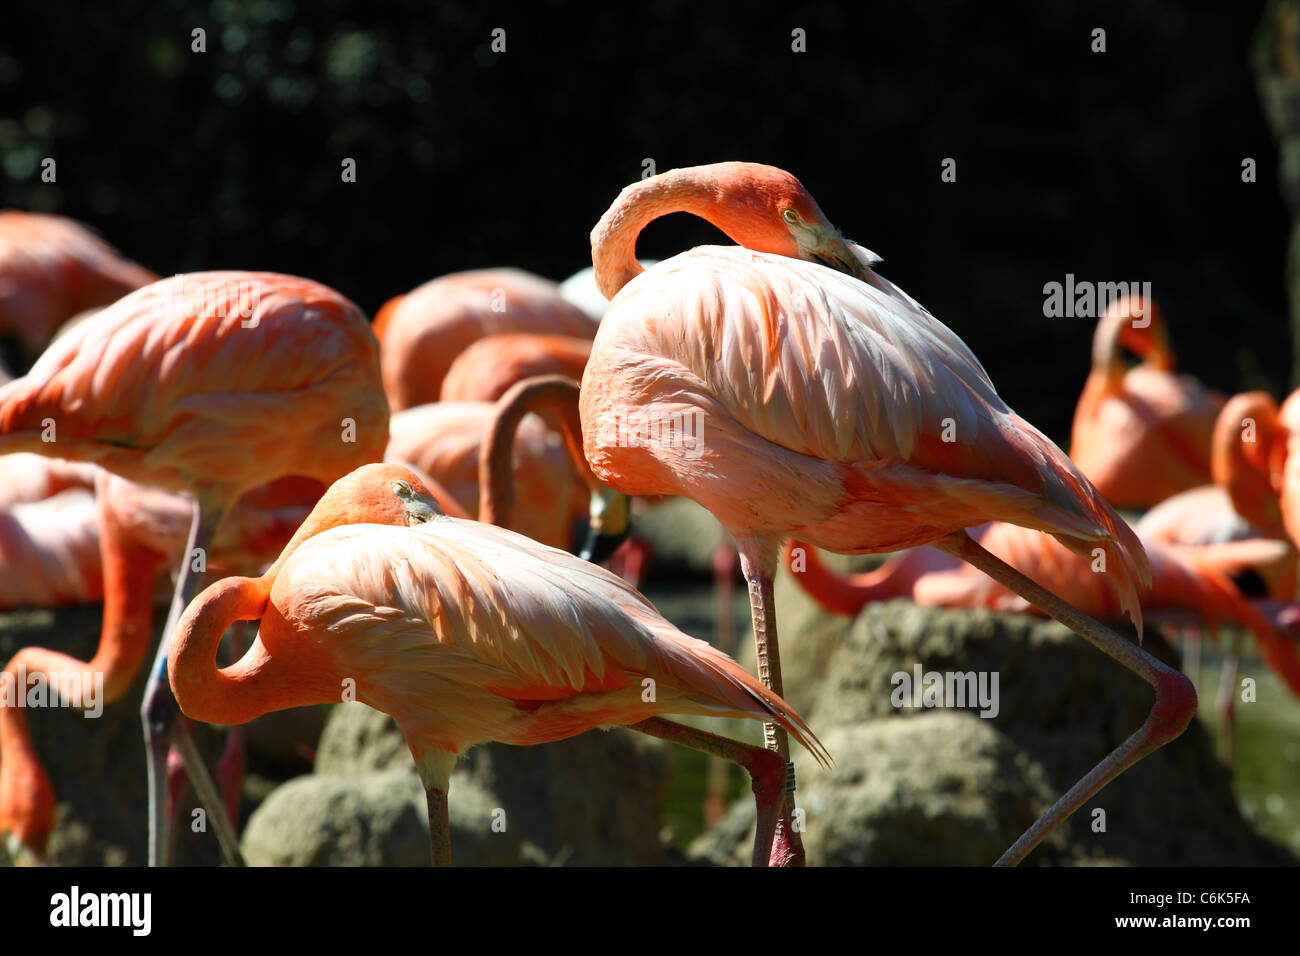 Porträt von der Karibik flamingo Stockfoto